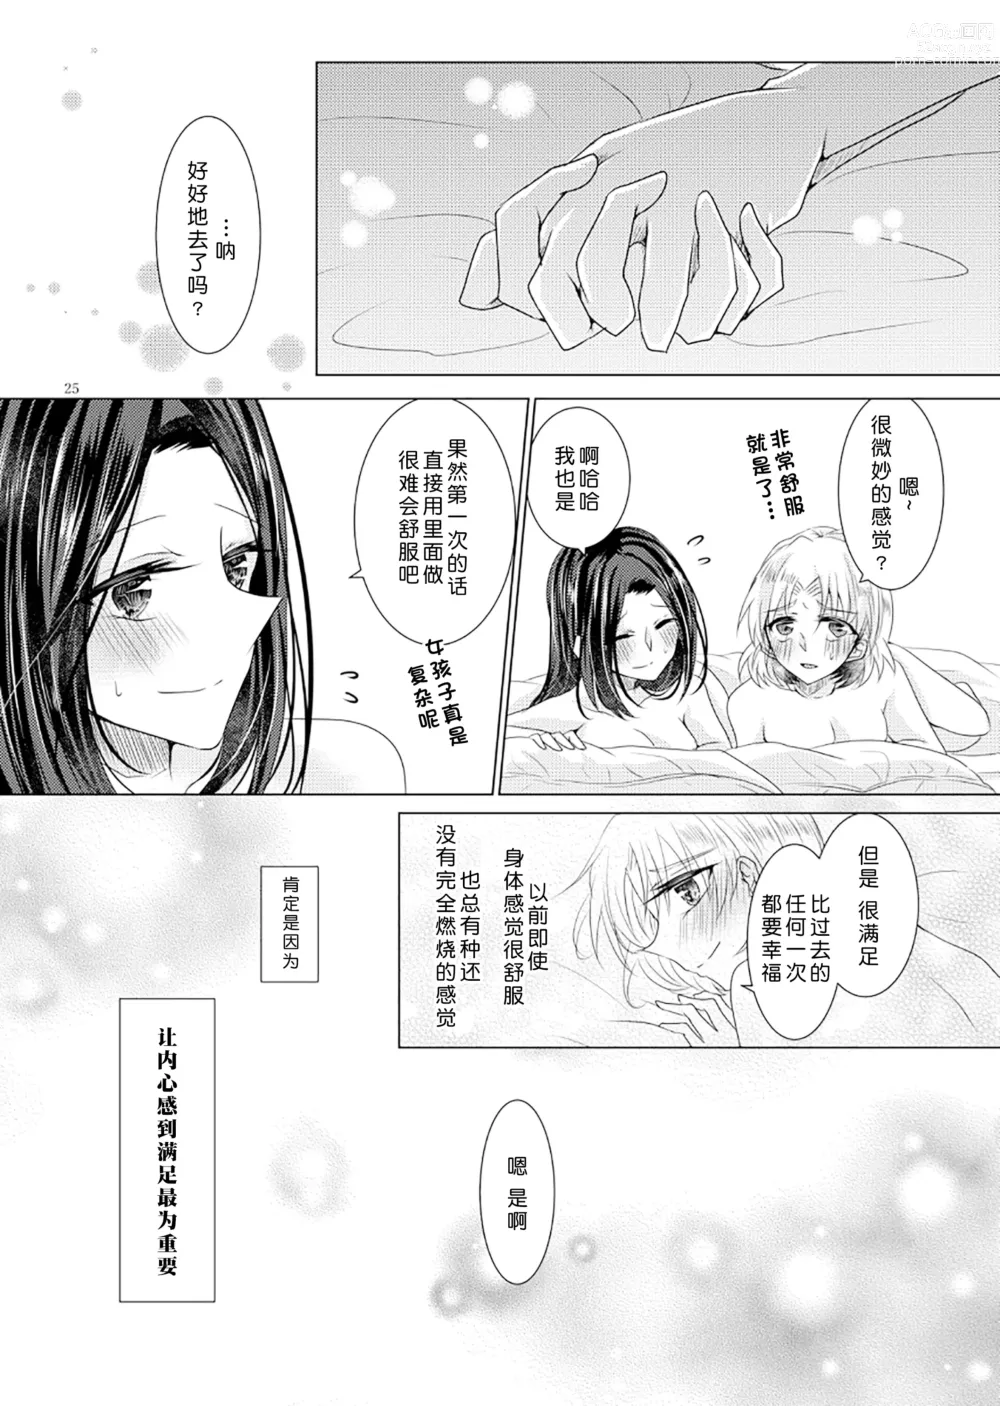 Page 24 of doujinshi 倒错罗曼司